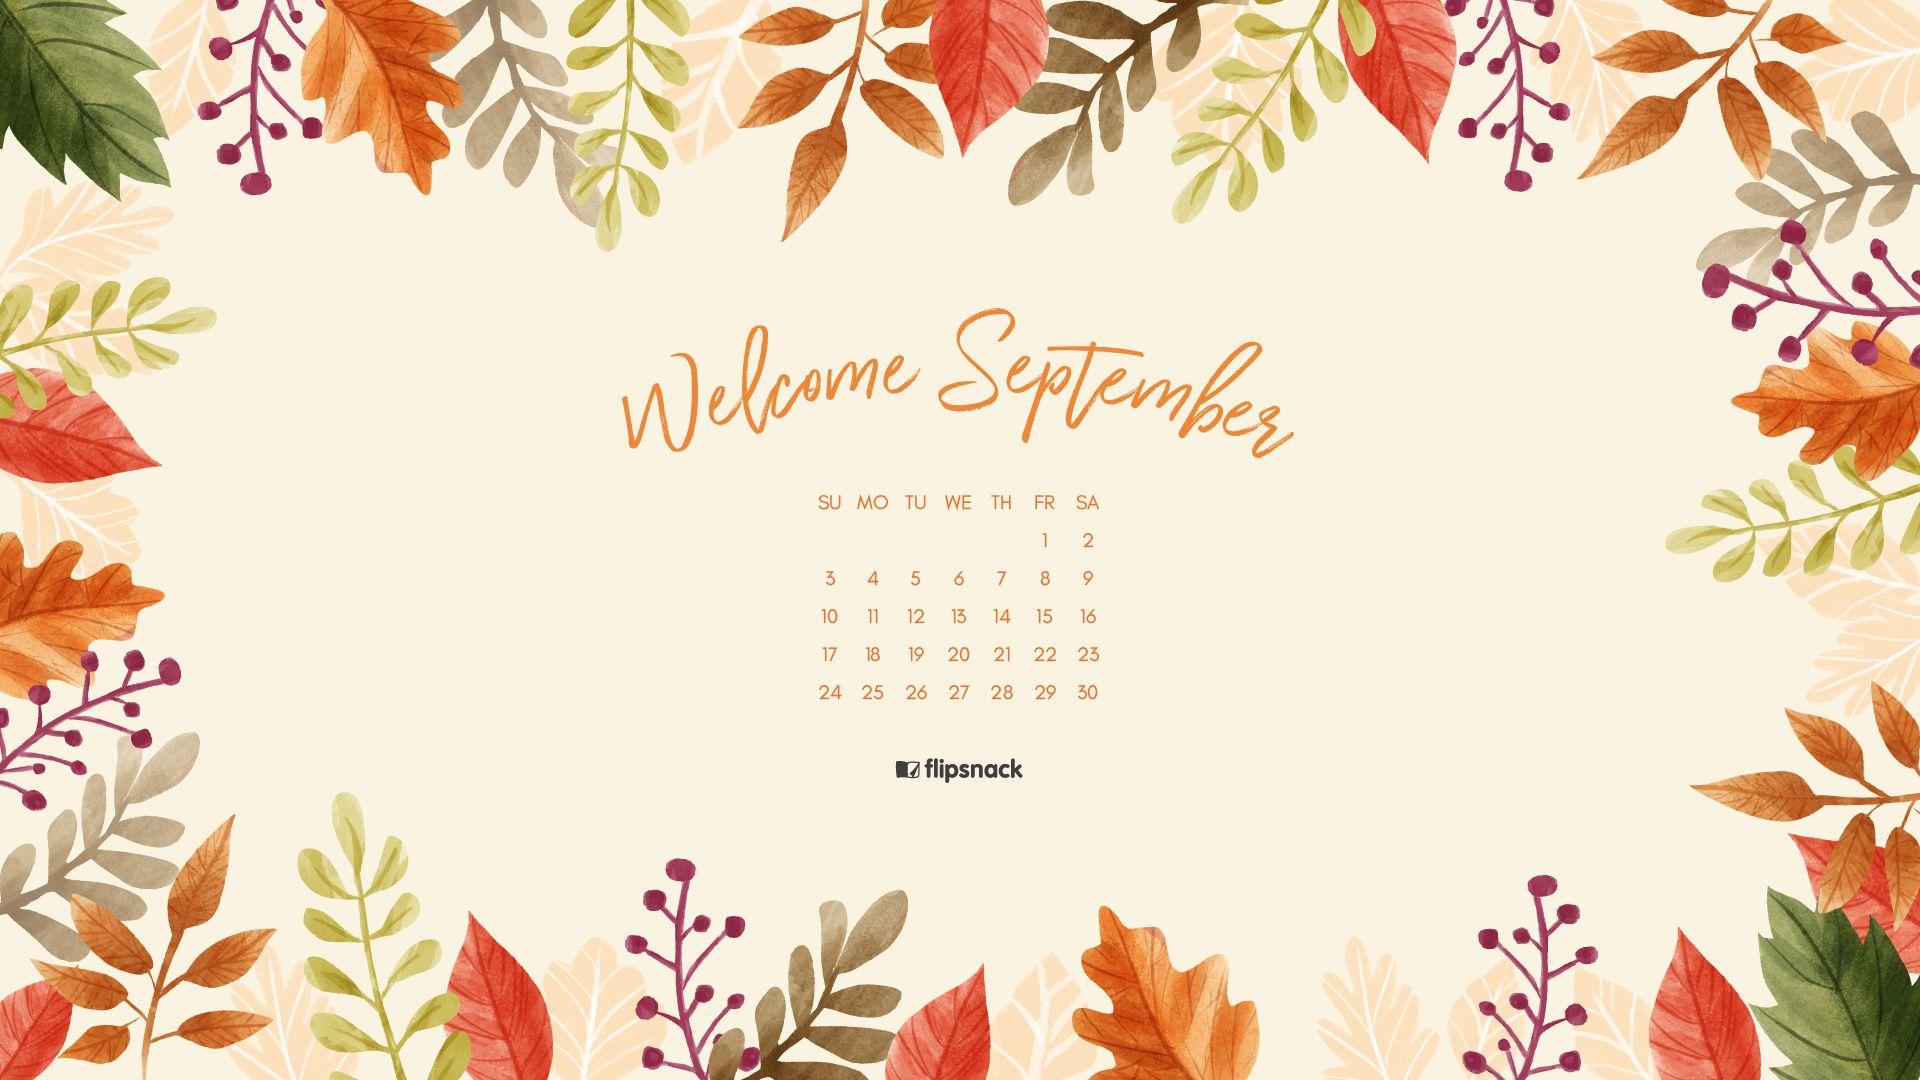 September 2017 calendar wallpaper for desktop background